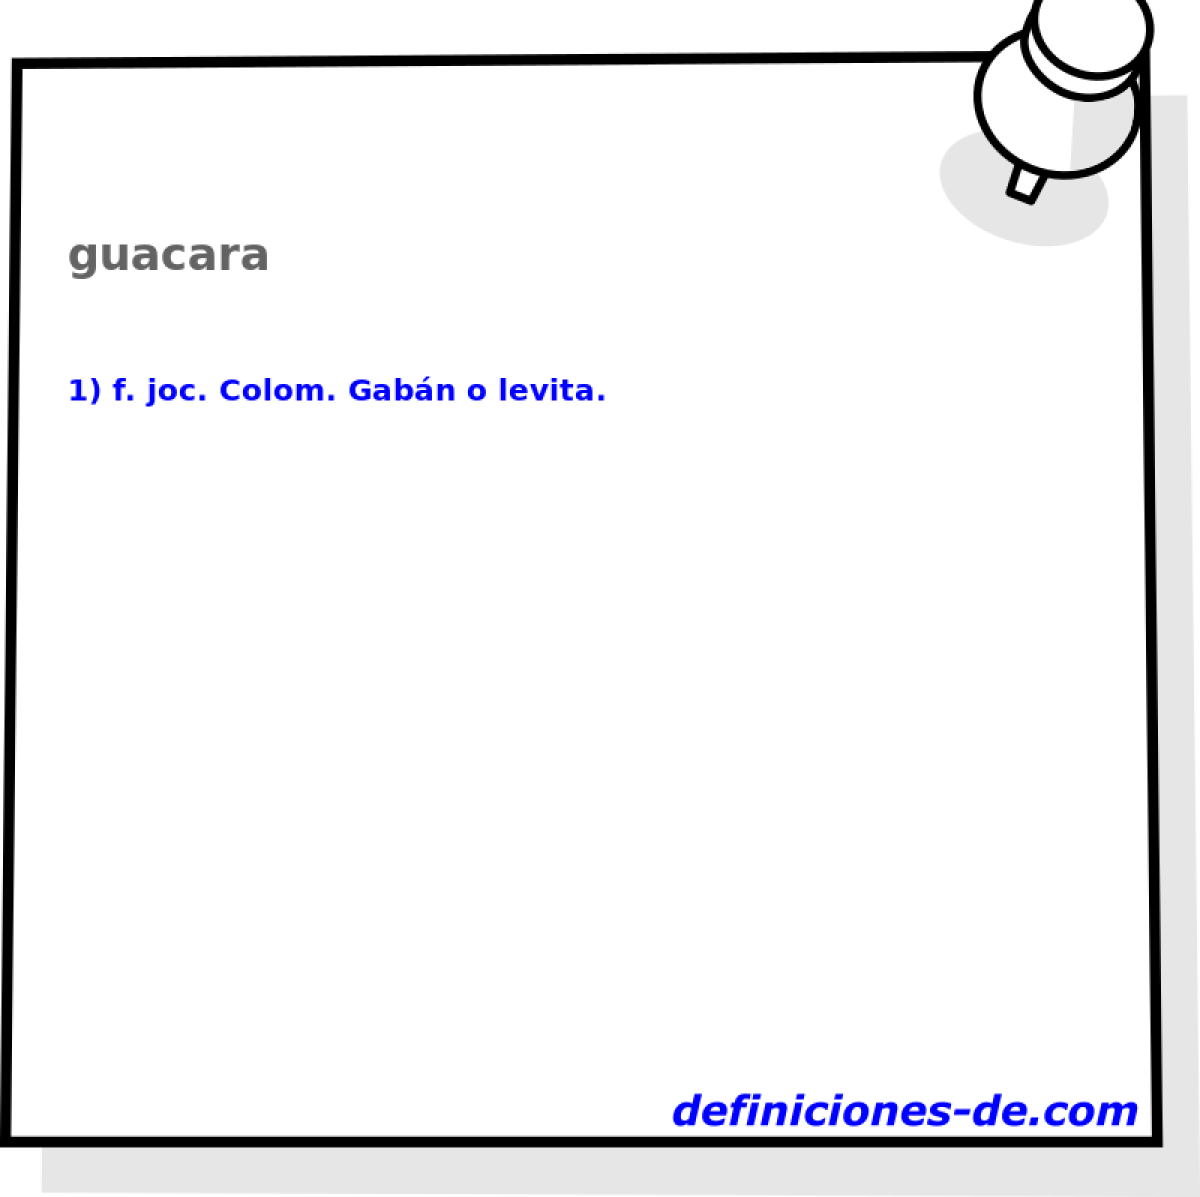 guacara 